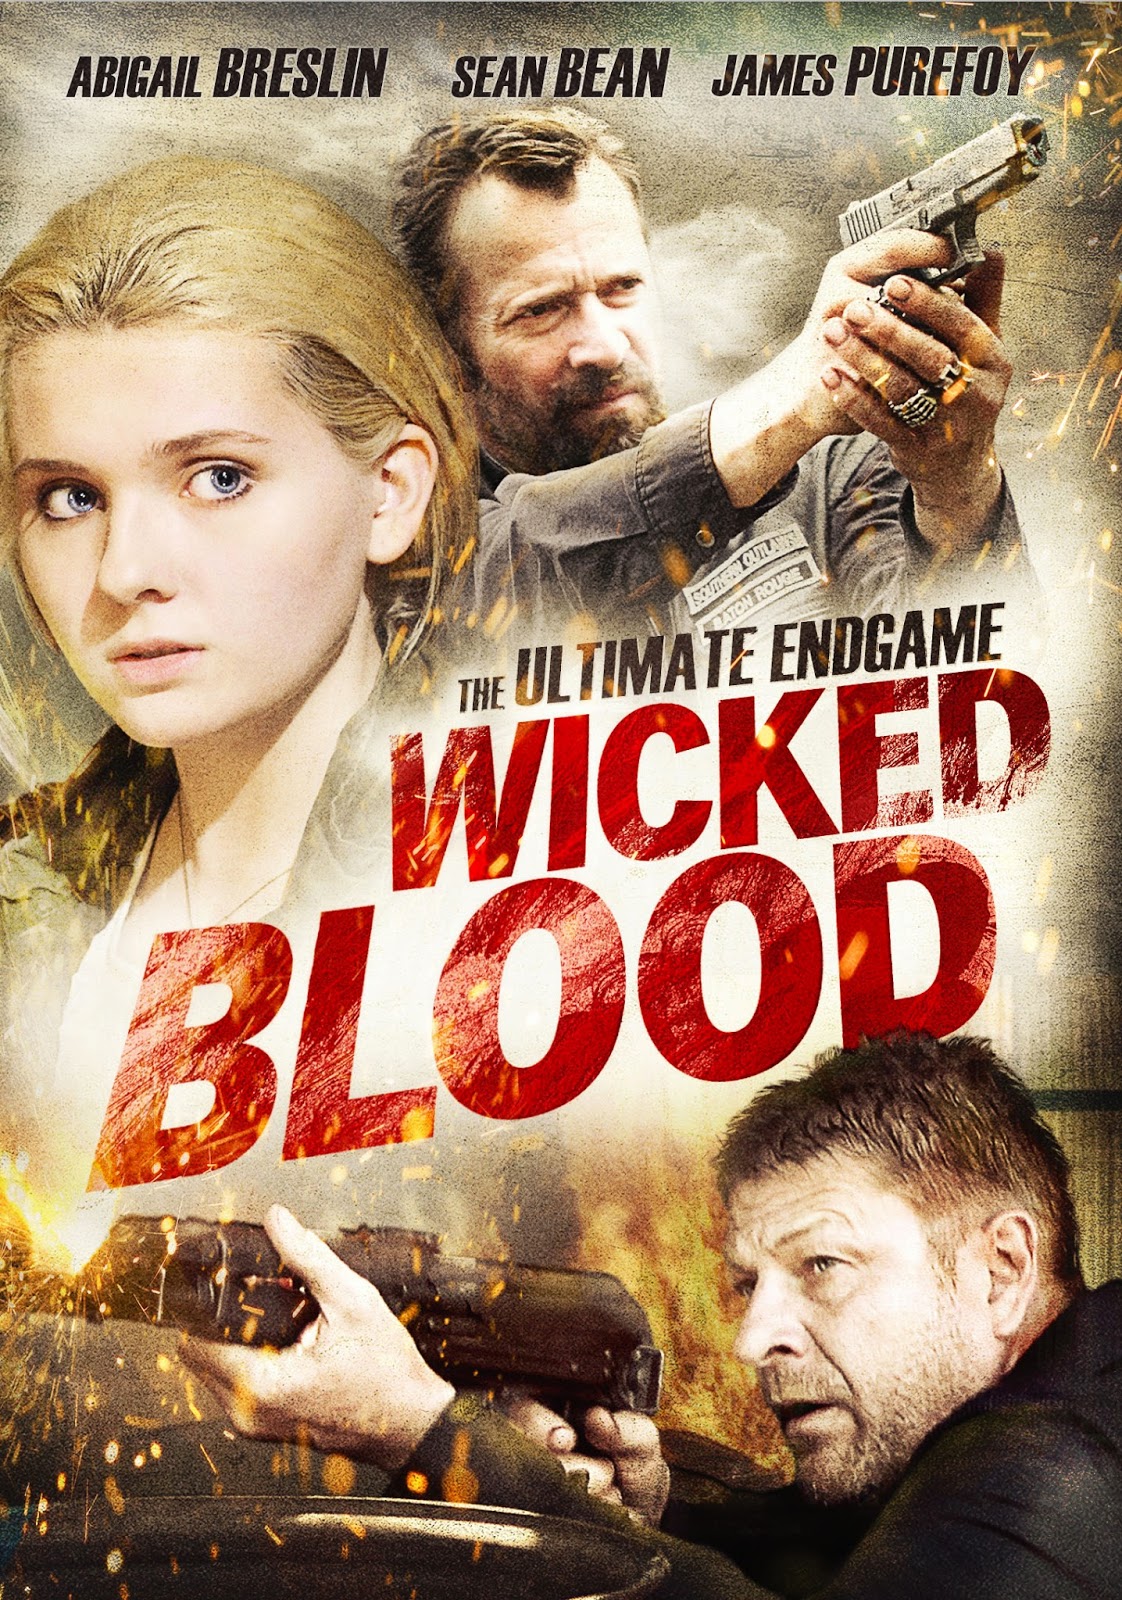  فیلم سینمایی Wicked Blood به کارگردانی Mark Young